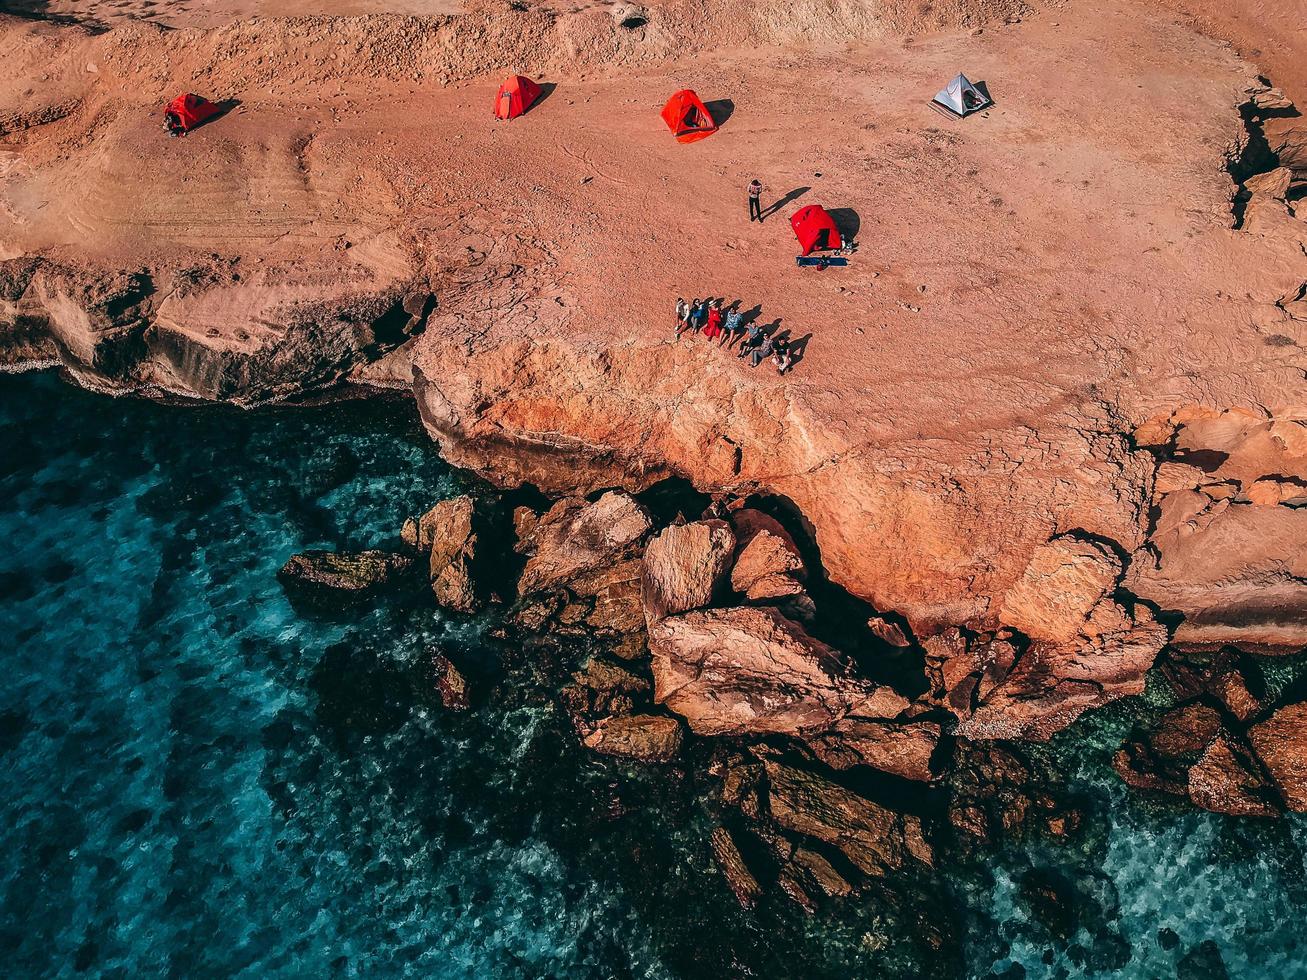 île de hengam, iran, 2020 - gens près d'une falaise sur une plage photo